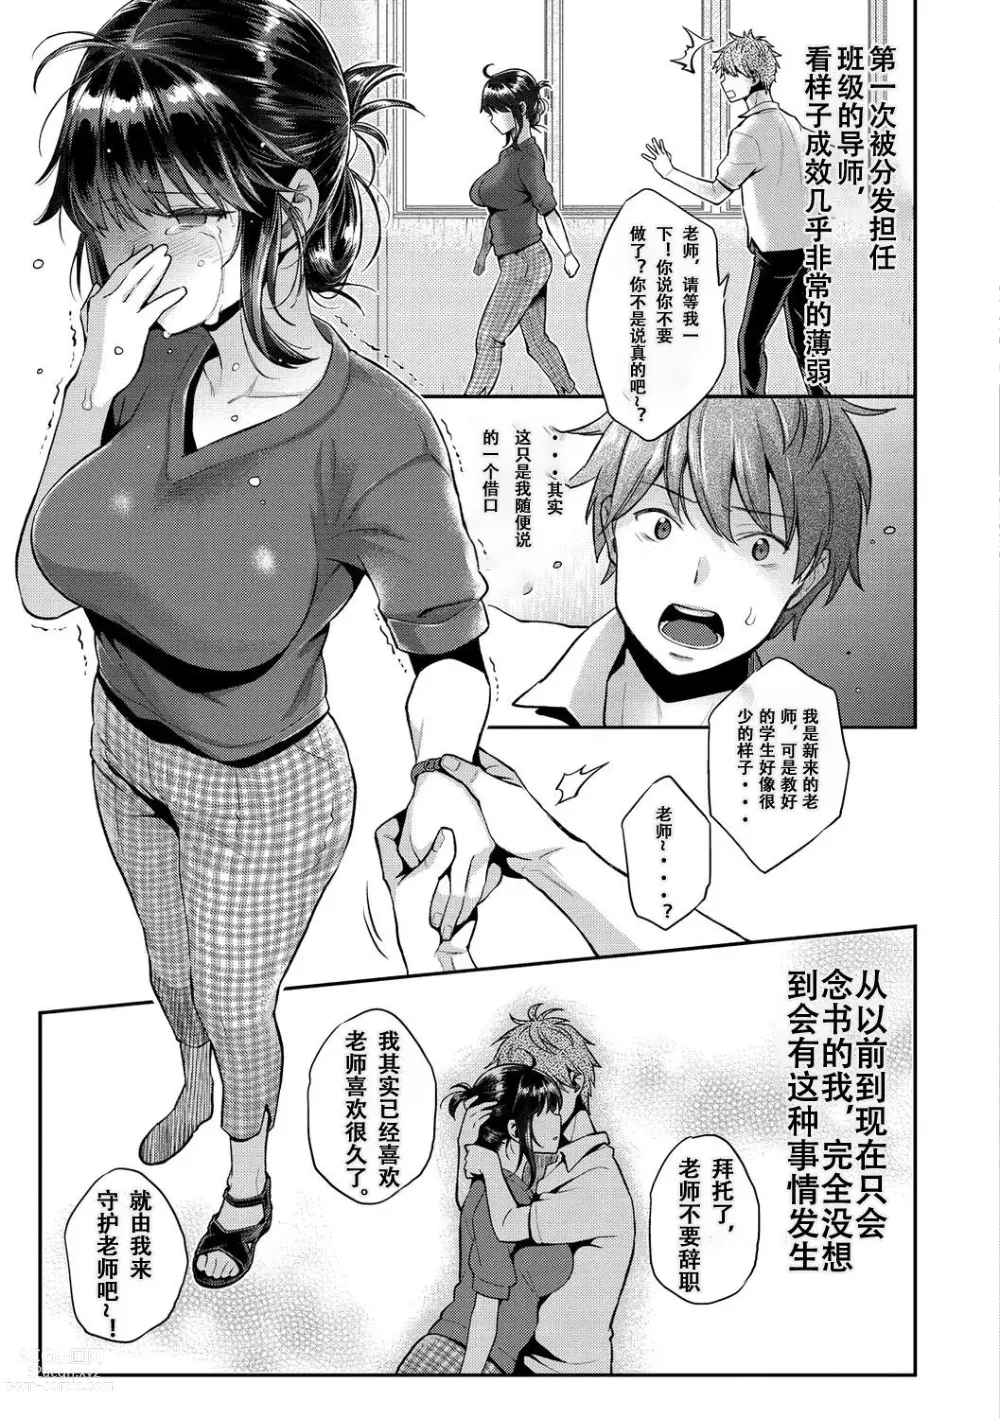 Page 9 of manga Ima... Shitai no